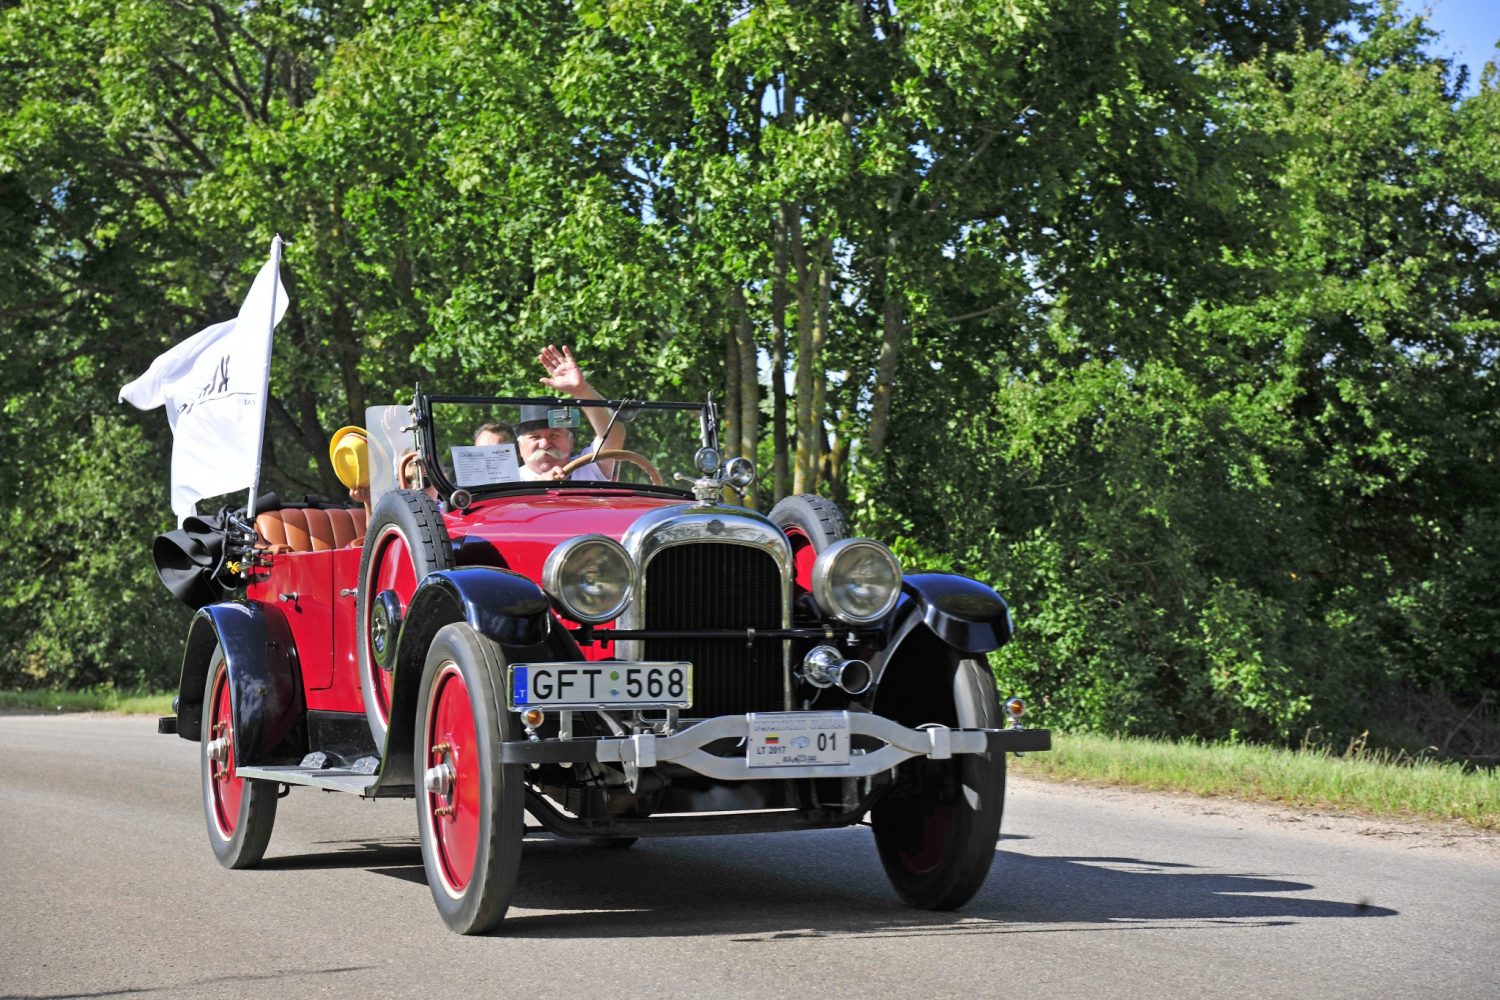 Laimėtojas - seniausio automobilio kategorijoje - NASH 681-7 Touring, pagamintas 1922 m. Savininkas – Gintautas Miškinis